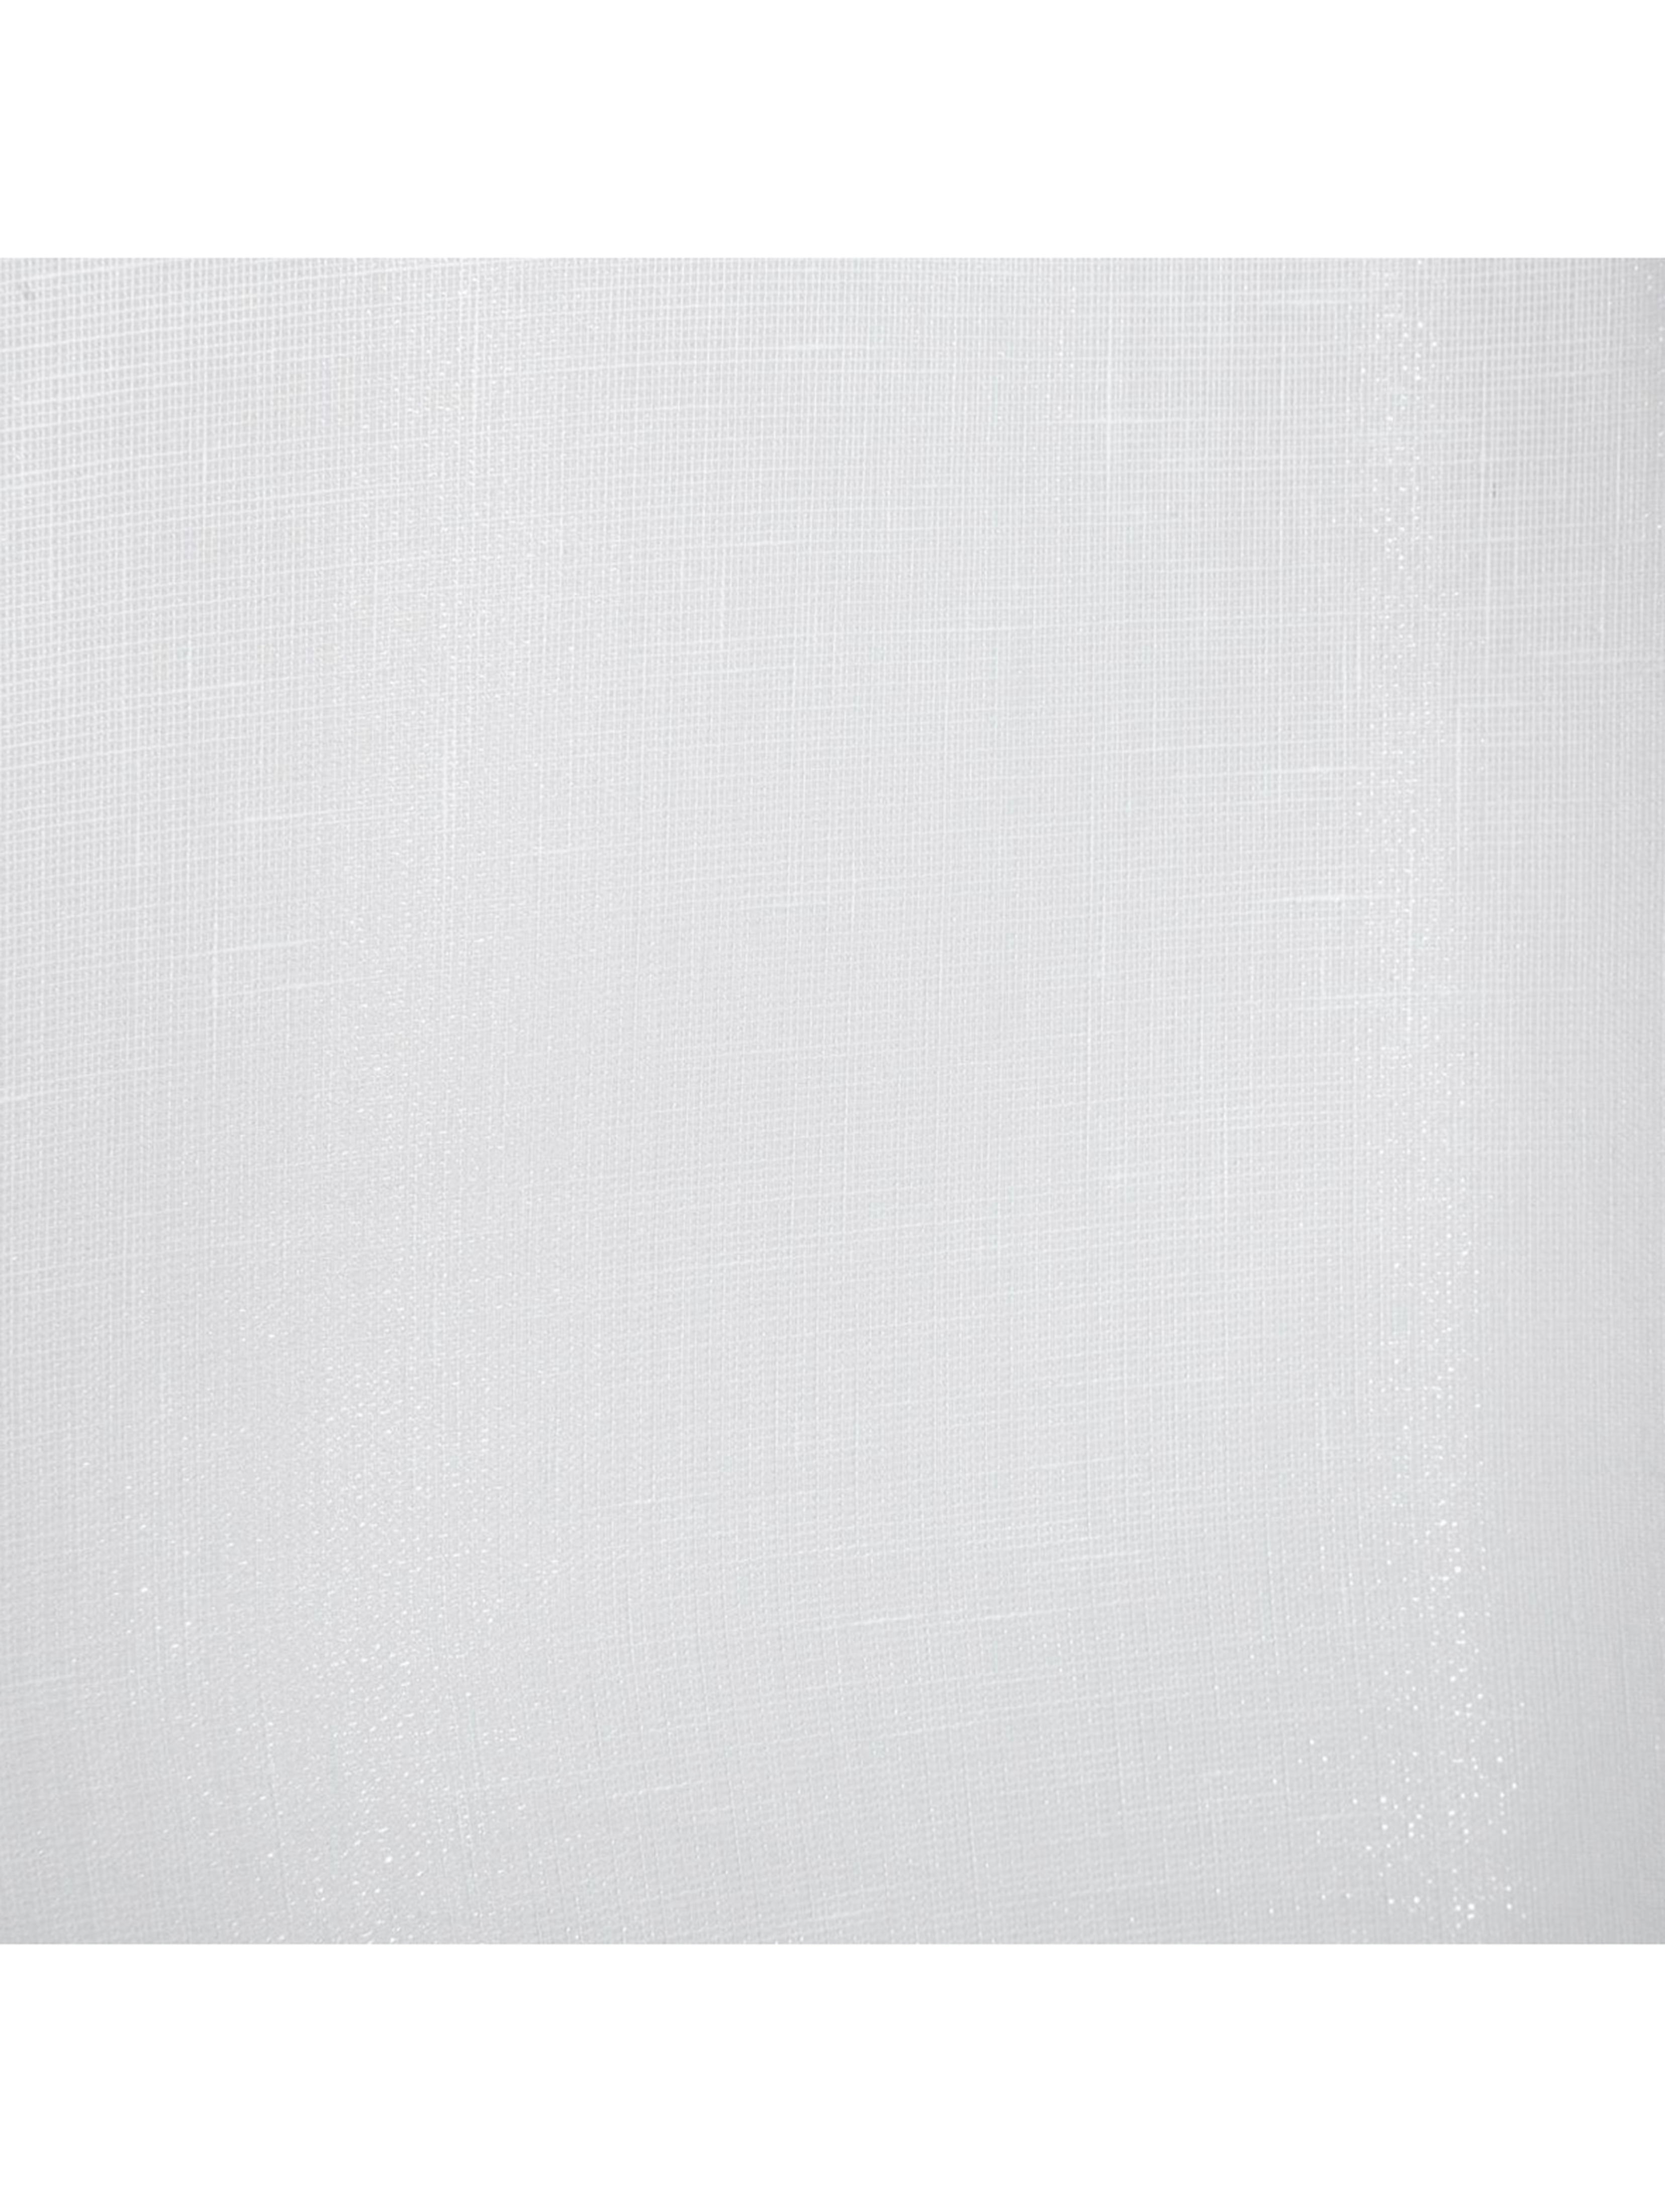 Biała firana 140x250 cm przepuszczająca światło